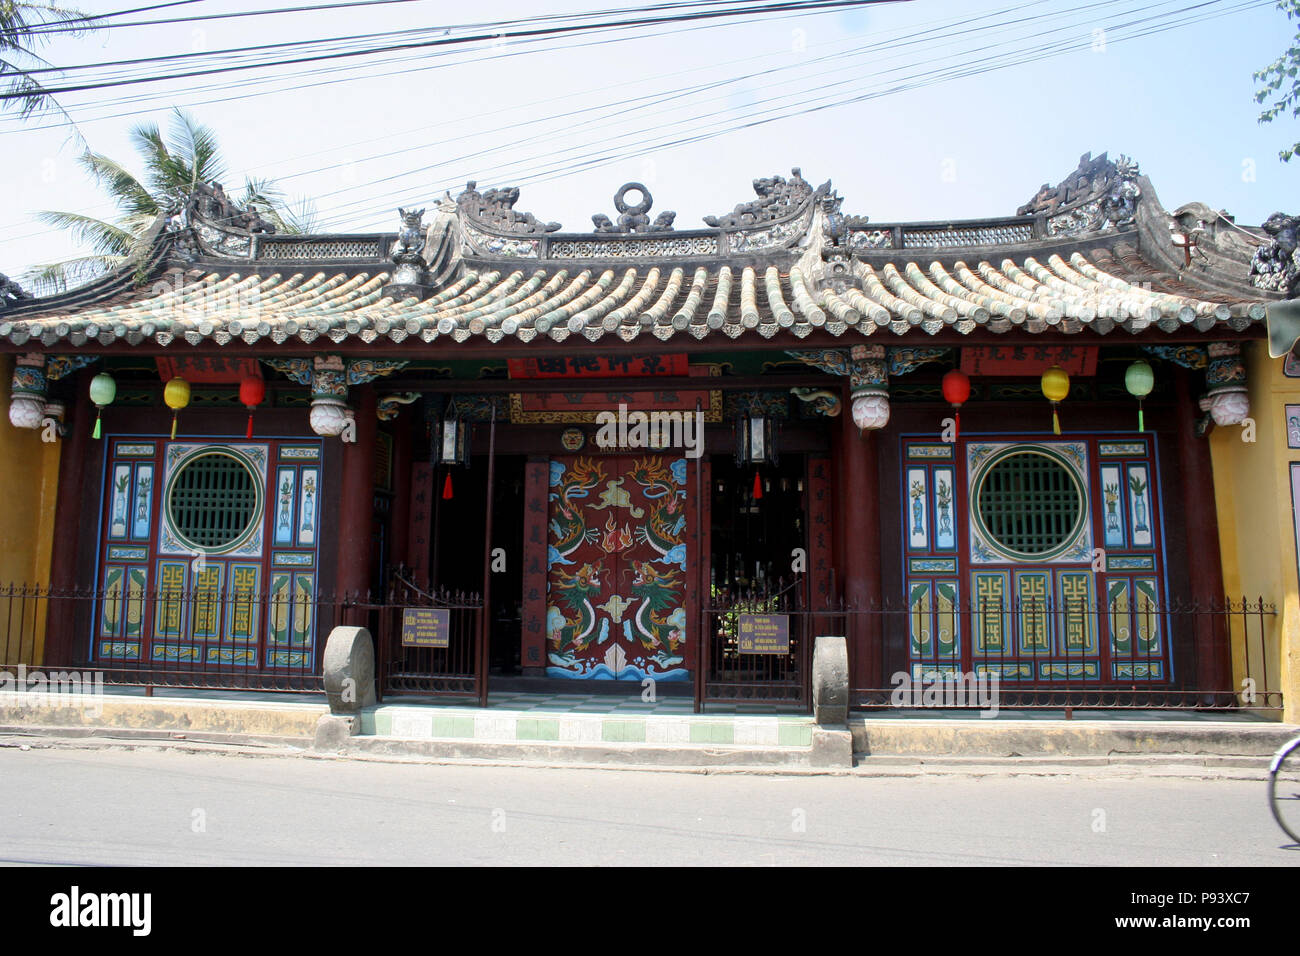 Storico edificio vietnamita con dipinte dettagli e lampioncini colorati, Hoi An, Vietnam Foto Stock